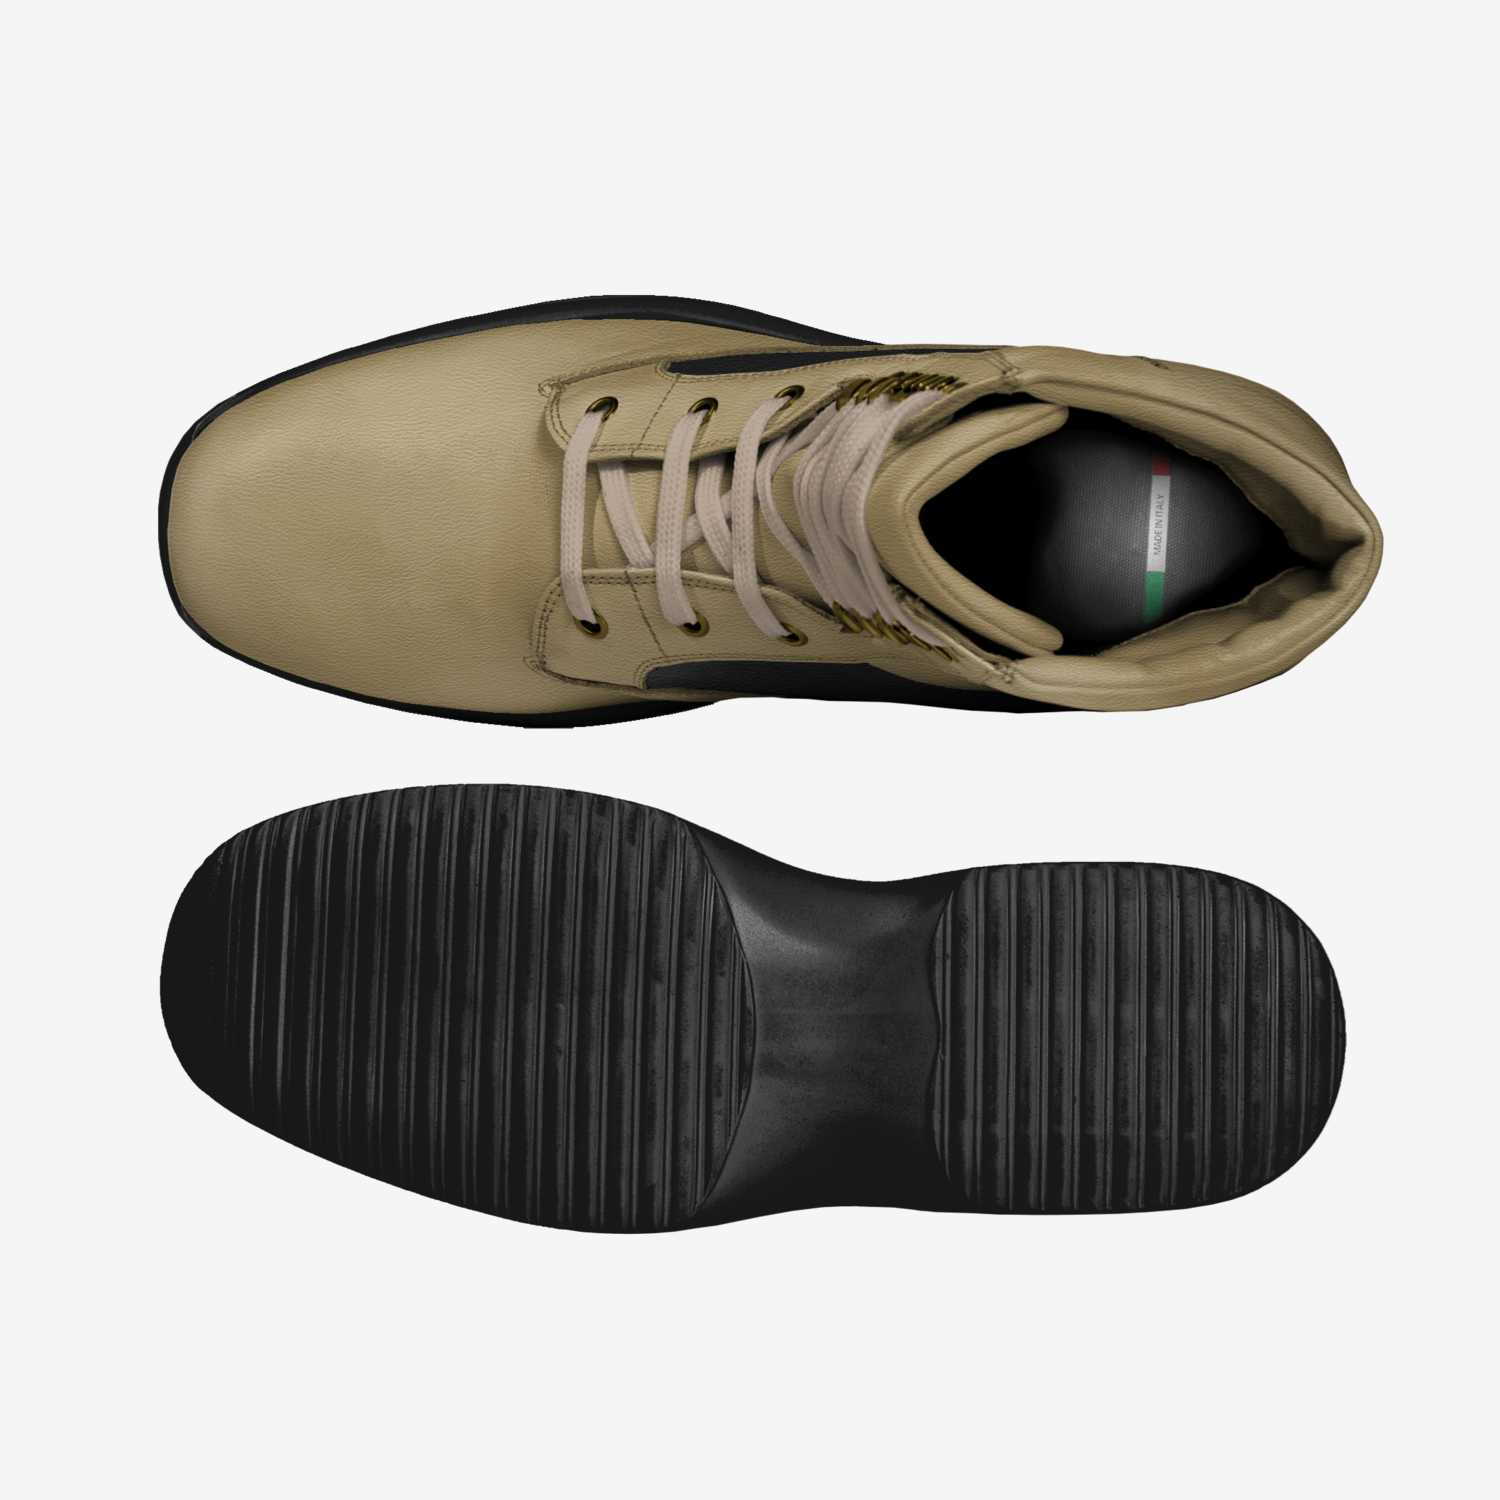 King Slang | A Custom Shoe concept by E. 